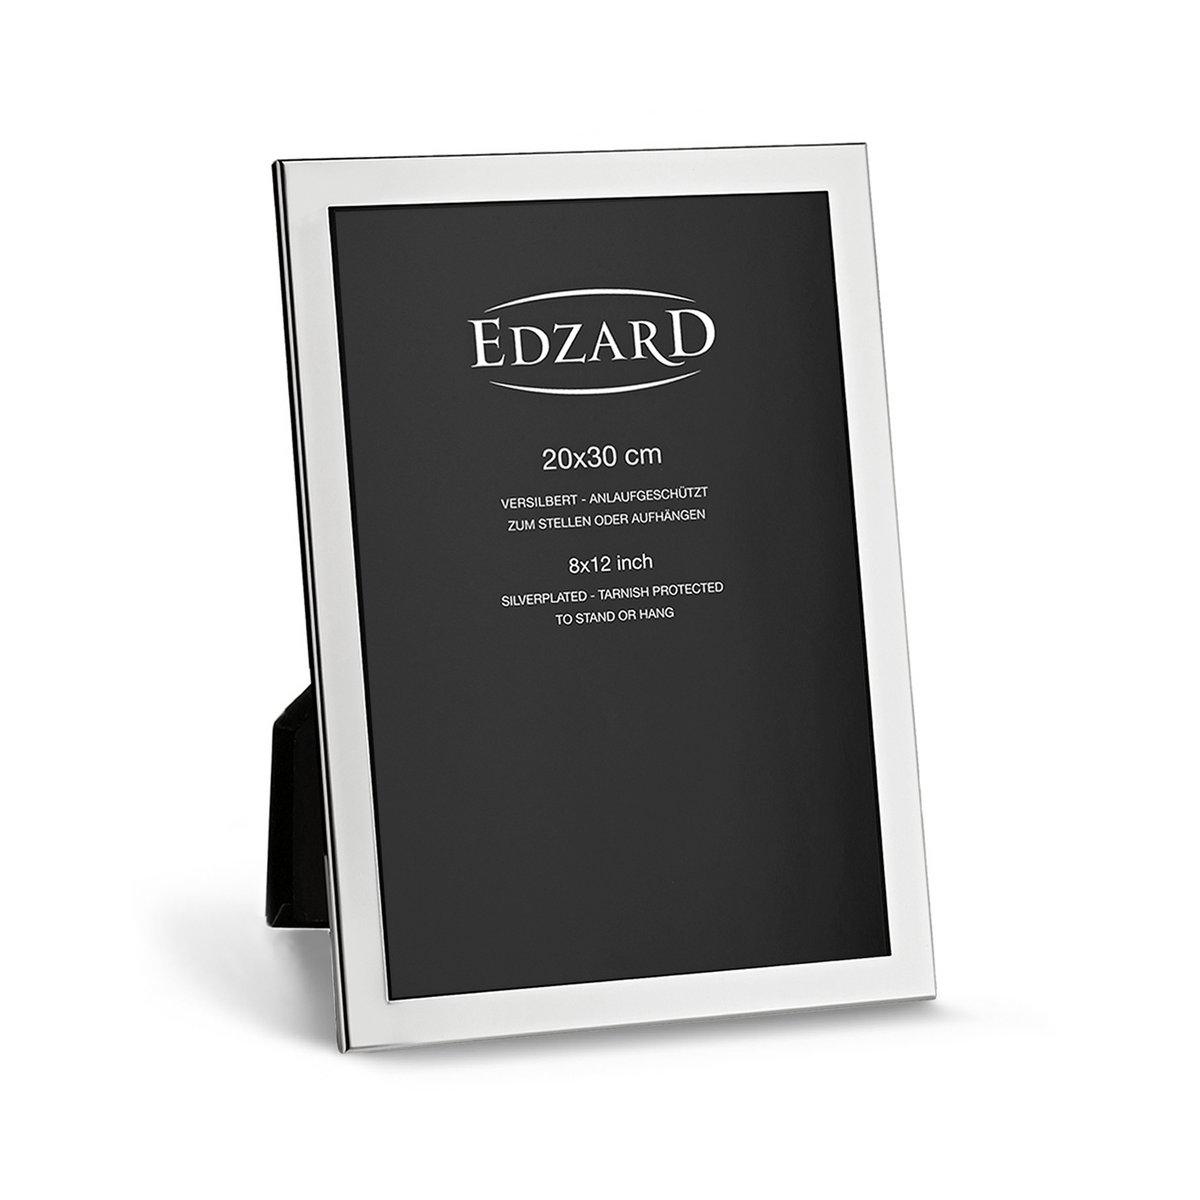 EDZARD Fotorahmen Prato für Foto 20 x 30 cm, edel versilbert, anlaufgeschützt, mit 2 Aufhängern - HomeDesign Knaus